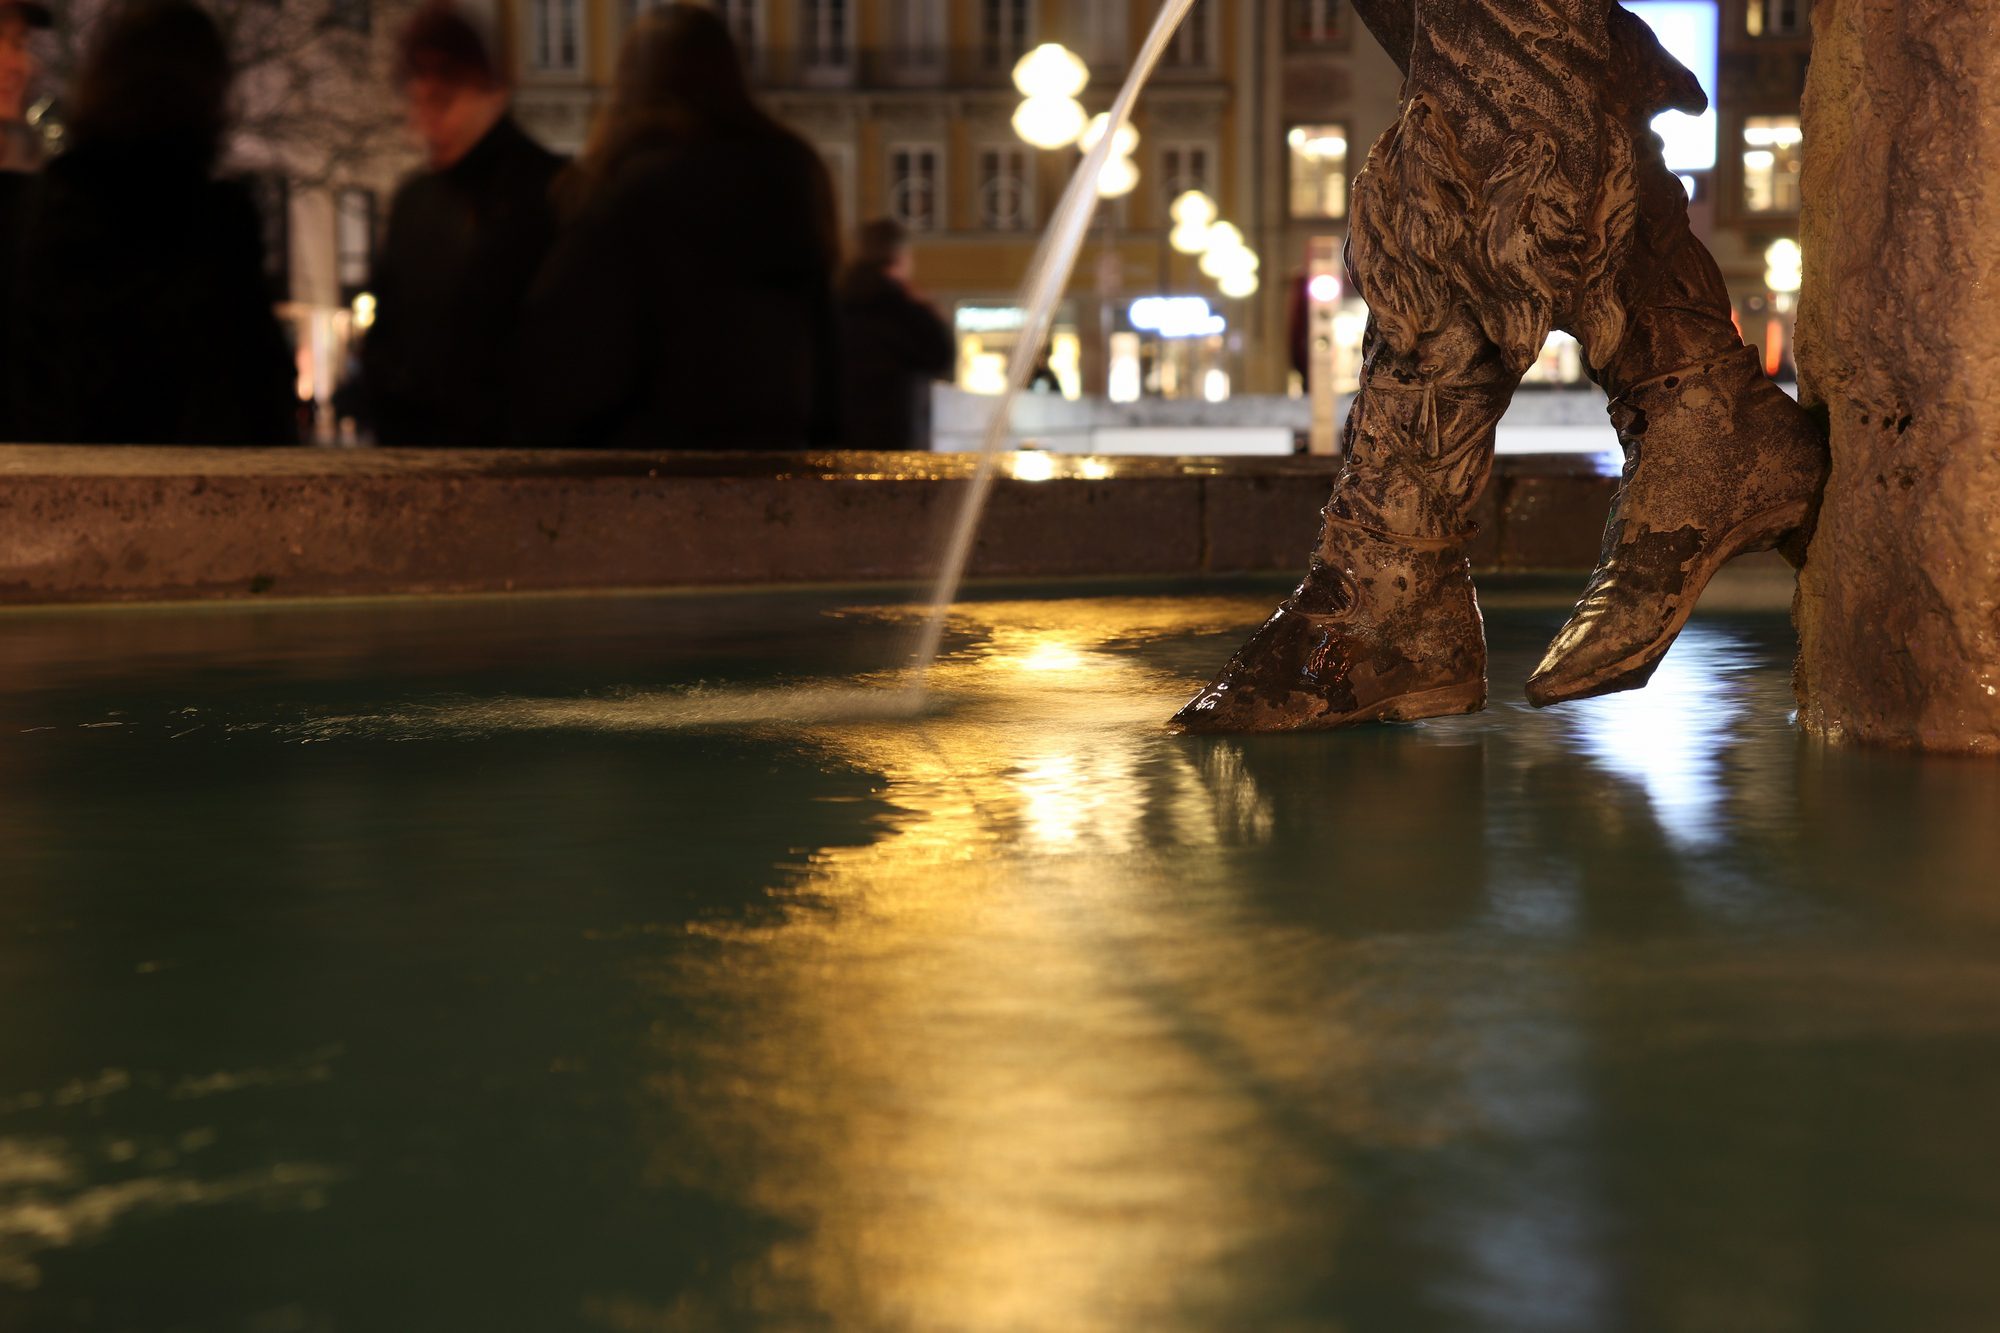 Fischbrunnen am Marienplatz in München